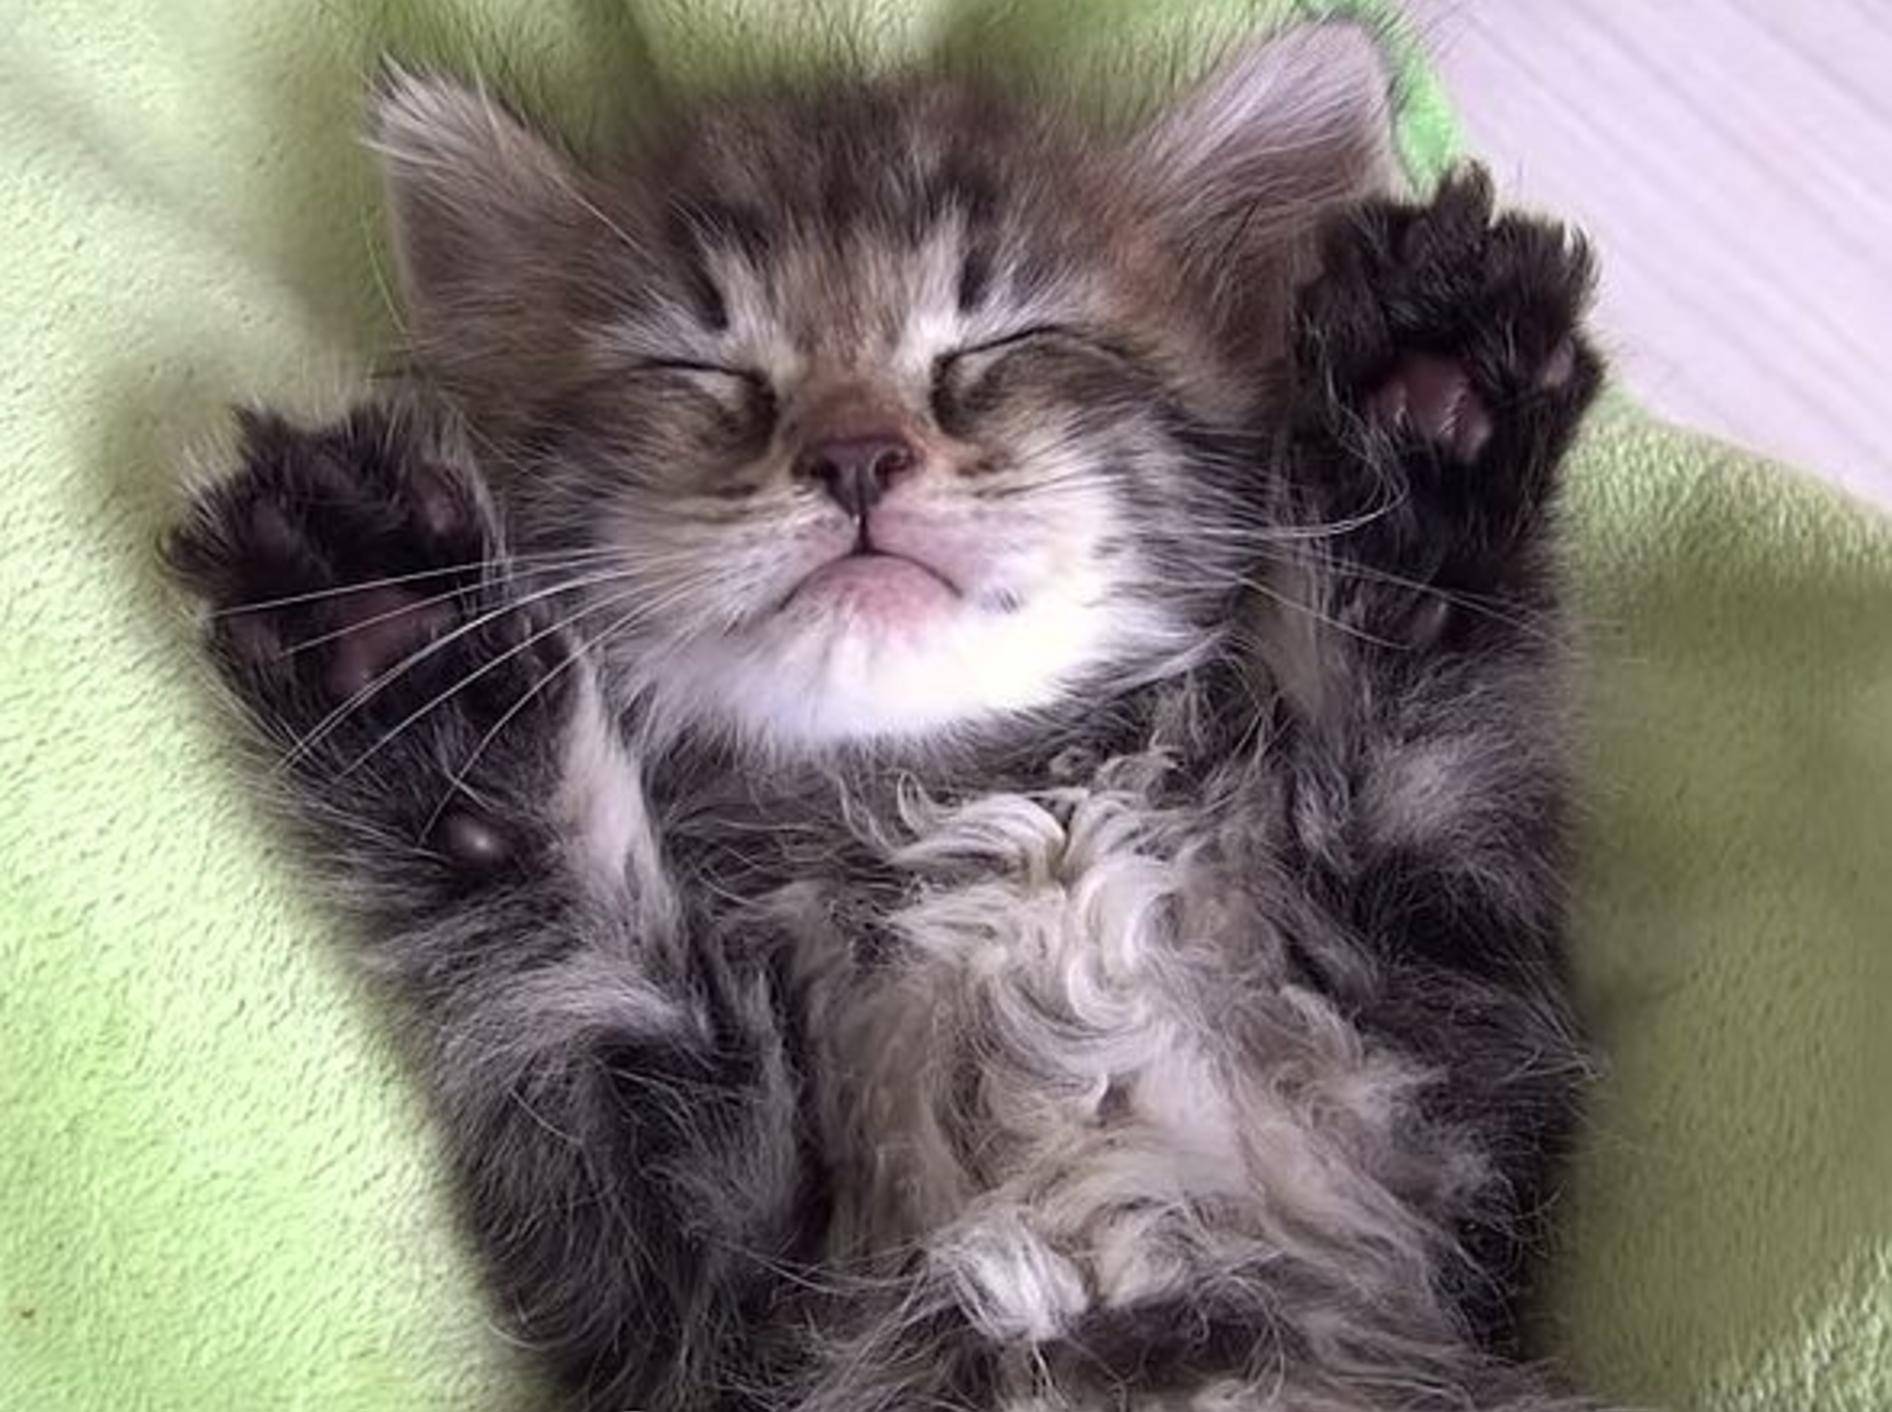 Flauschiges Katzenbaby: "Juhu, hier fühl' ich mich wohl!" – Bild: Youtube / １０Cats.